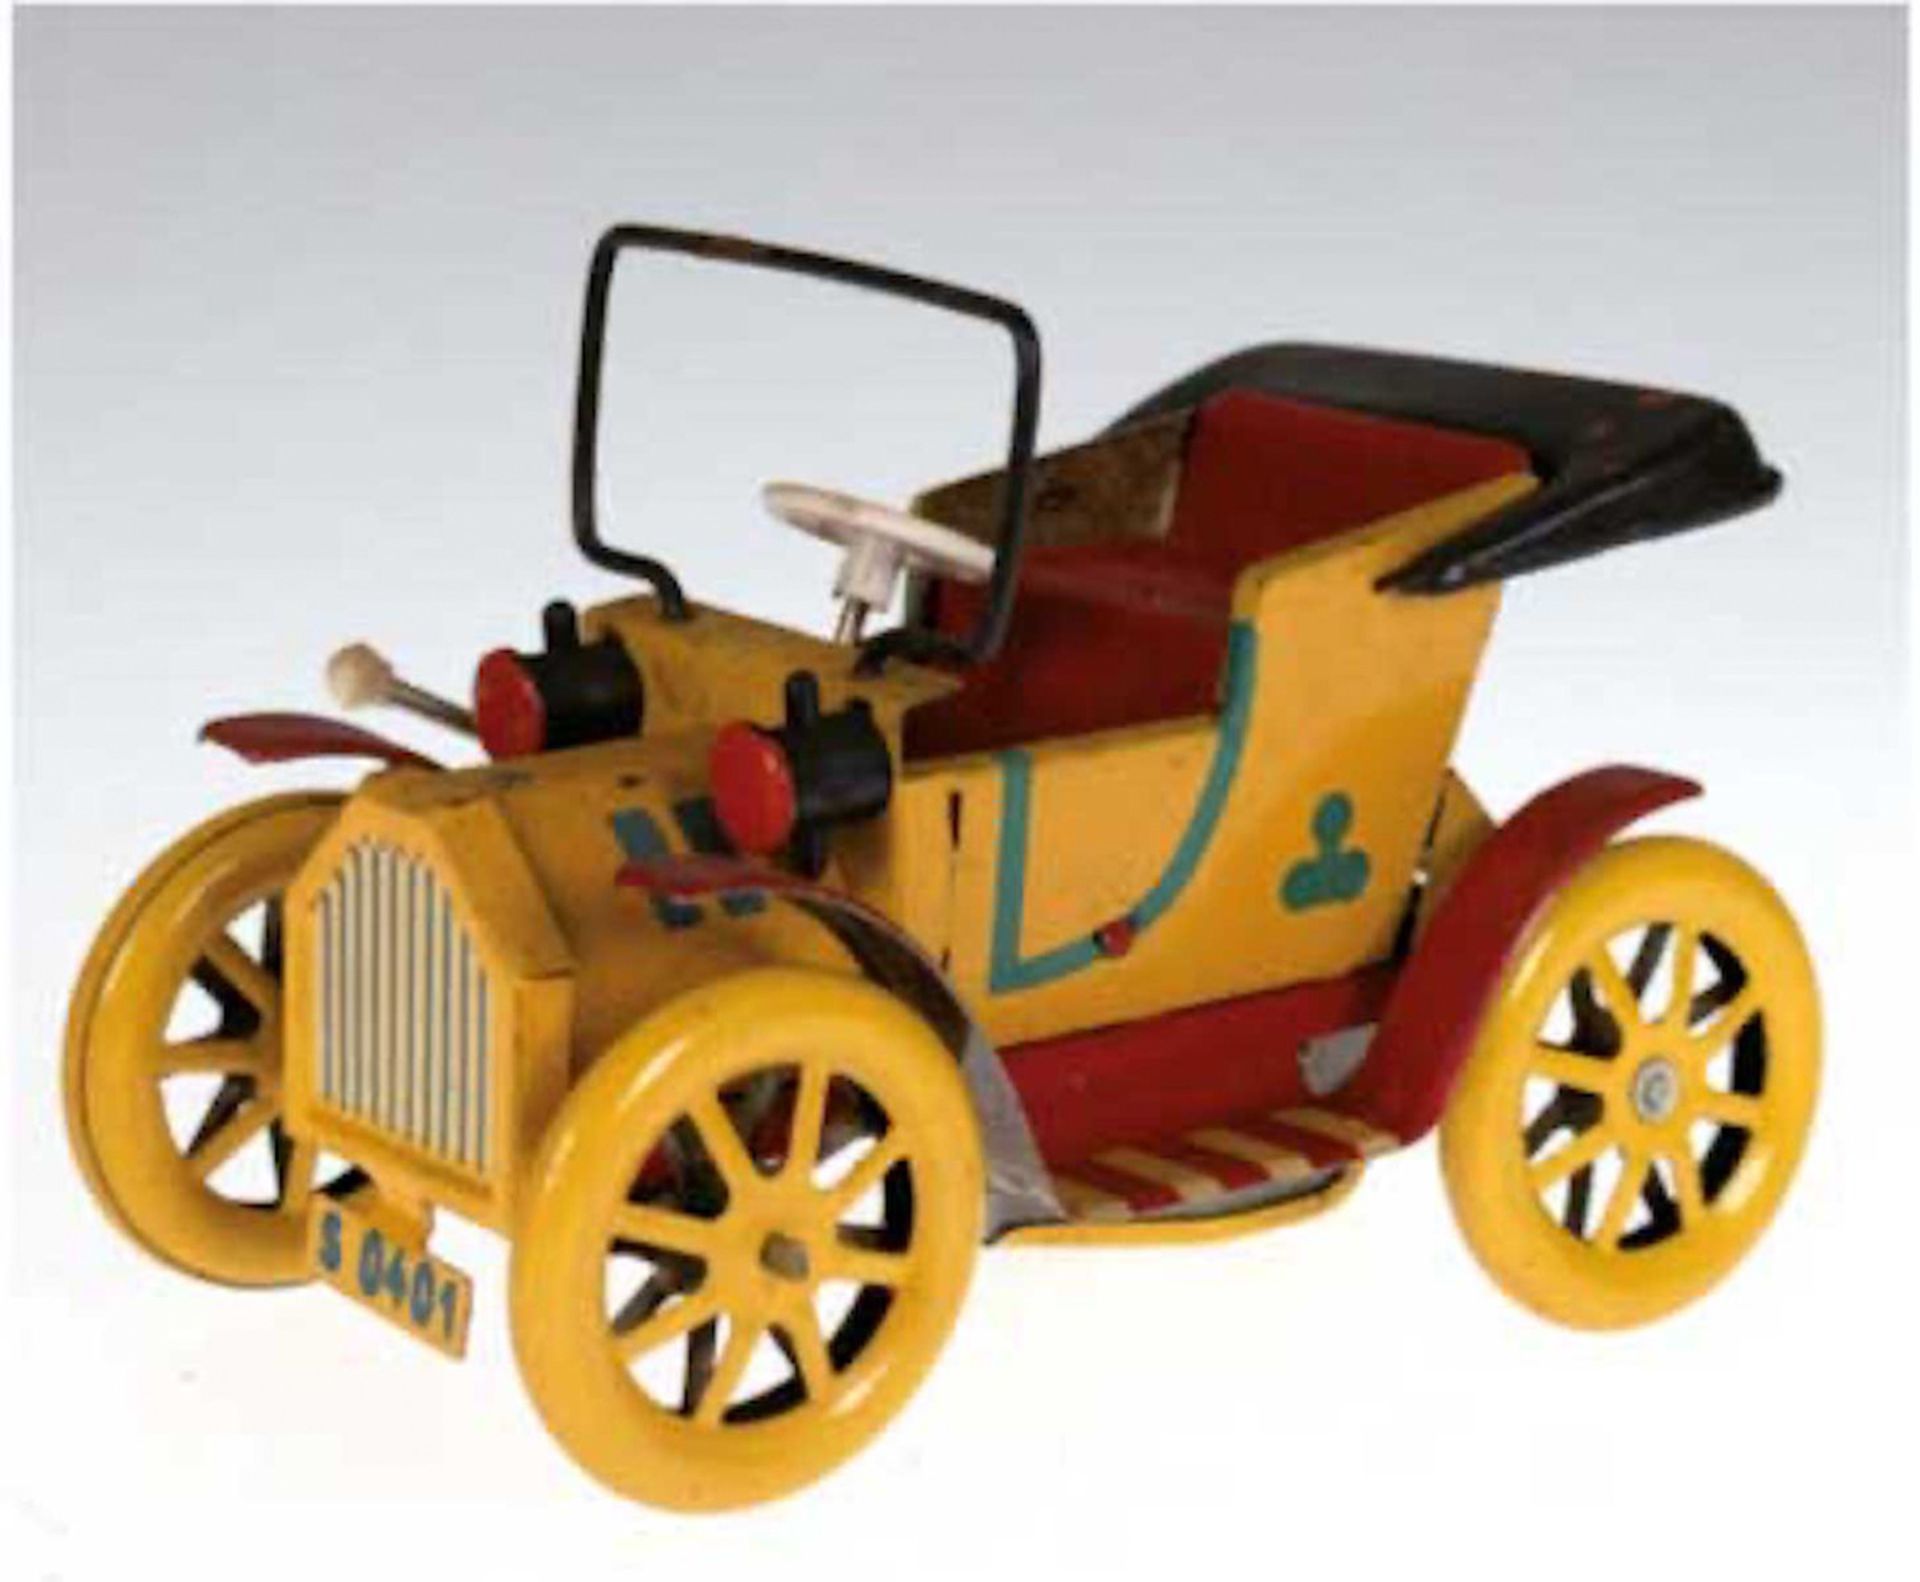 Modellauto, Blech, rot/gelb lackiert, Gebrauchspuren, L. 14,5 cm